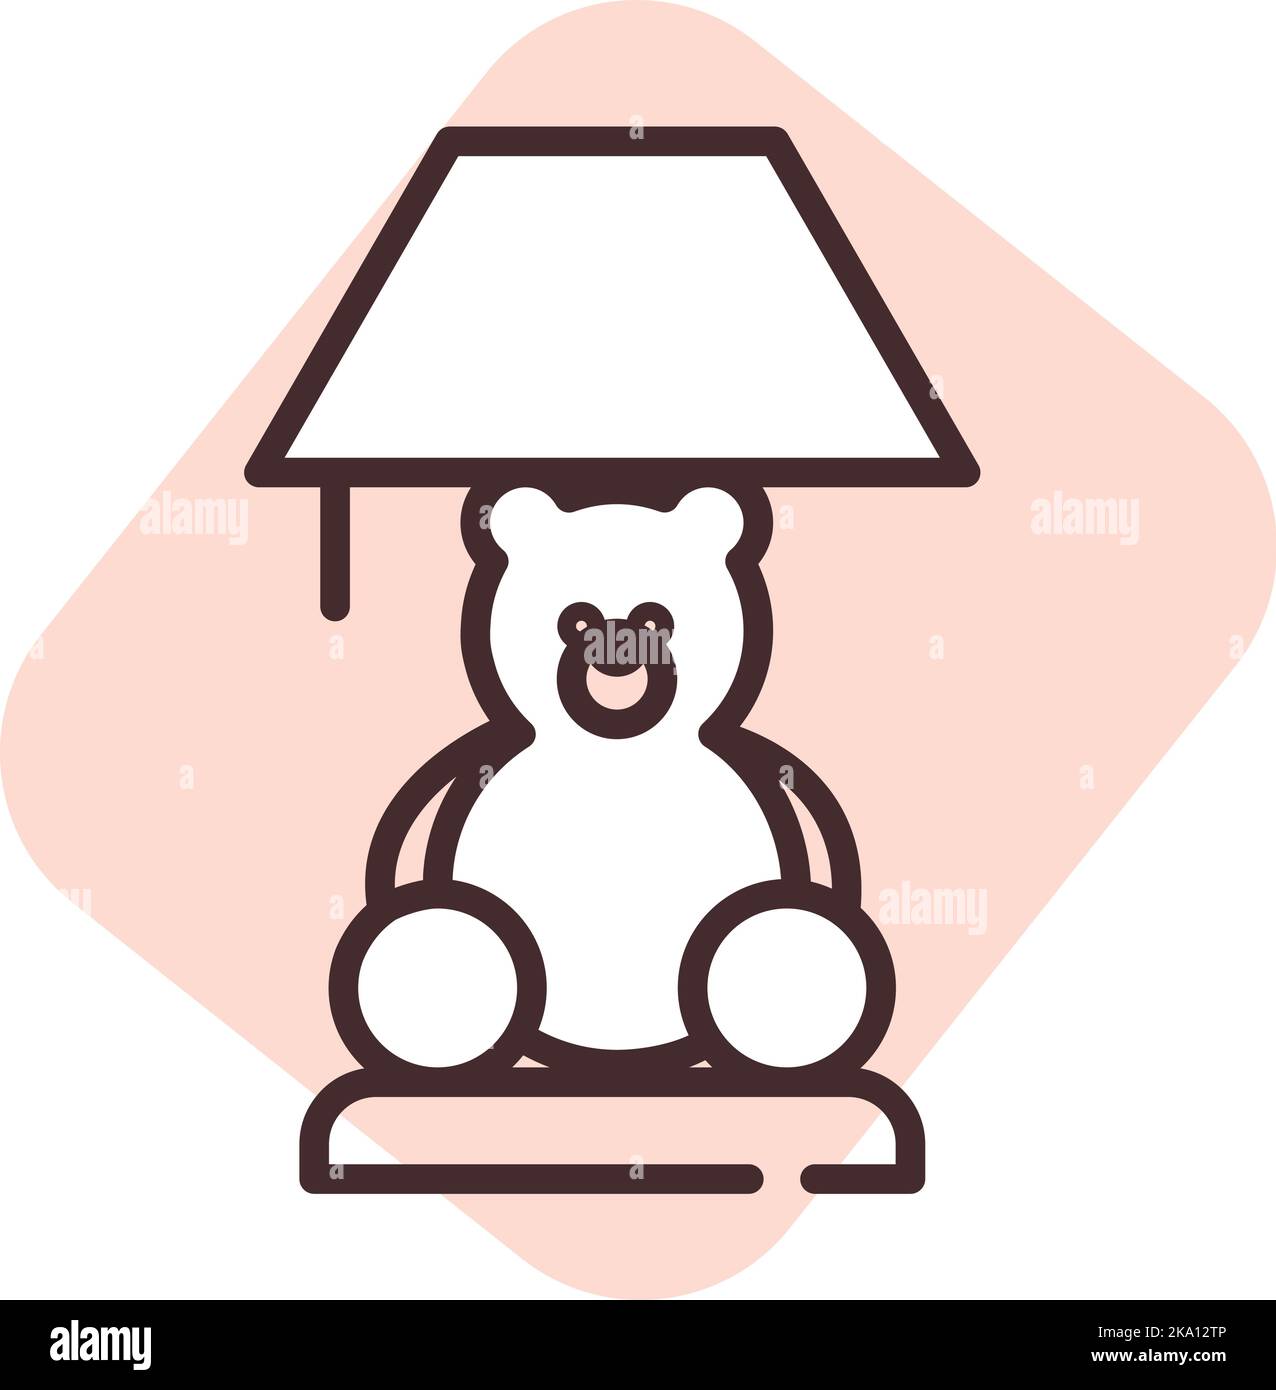 Helle Babylampe, Illustration oder Symbol, Vektor auf weißem Hintergrund. Stock Vektor